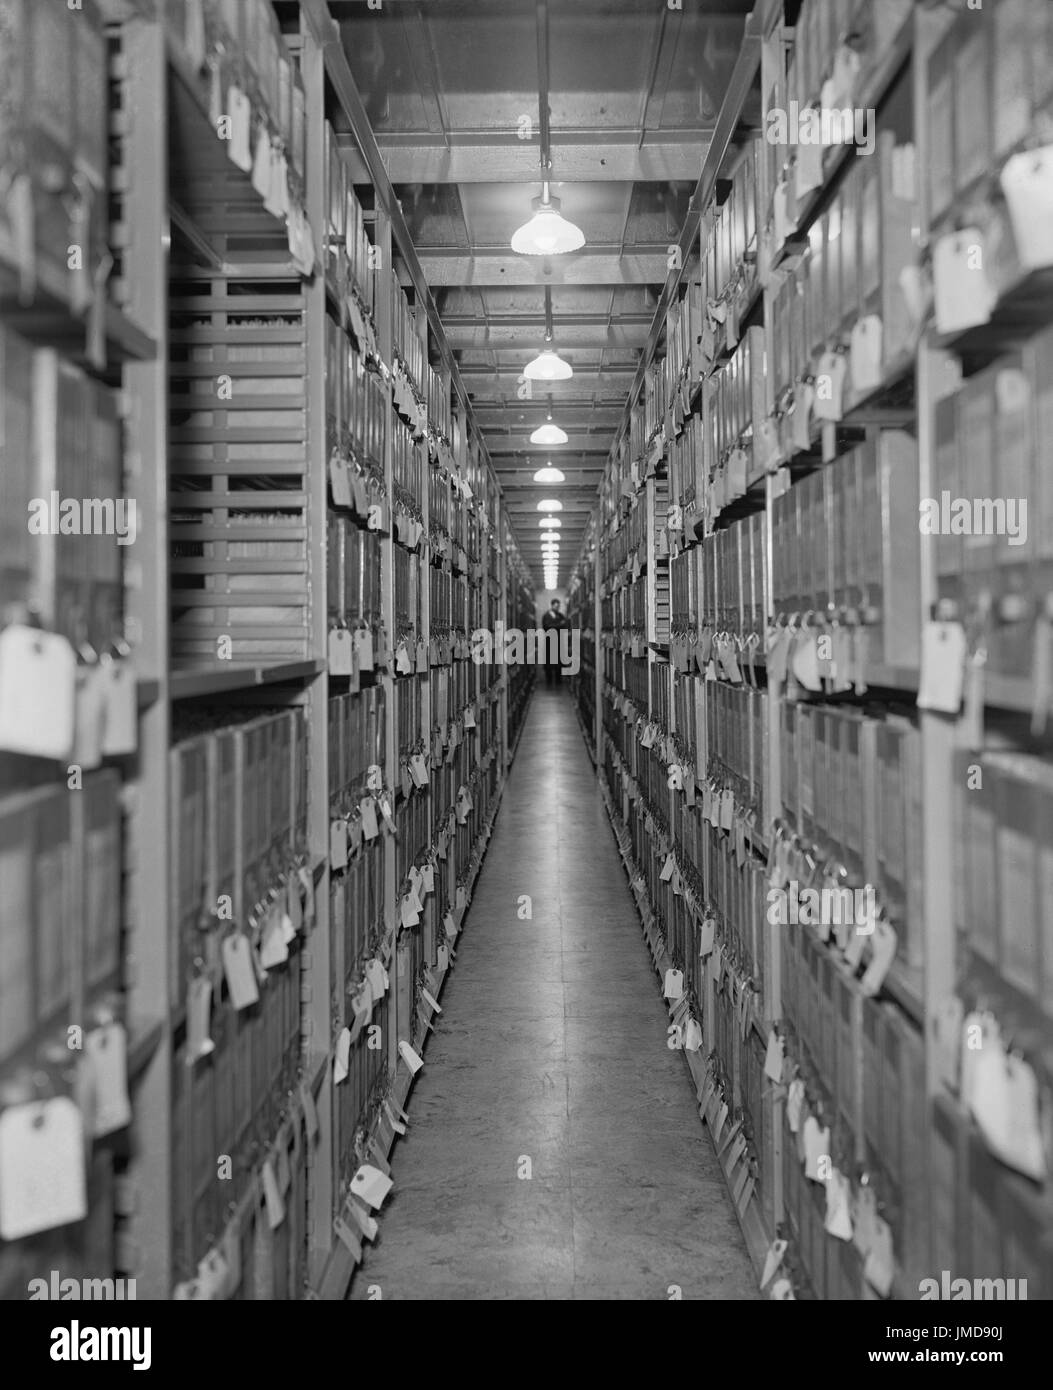 Corridoio di file, divisione del Dipartimento di guerra, archivi nazionali, Washington DC, USA, Harris & Ewing, 1939 Foto Stock